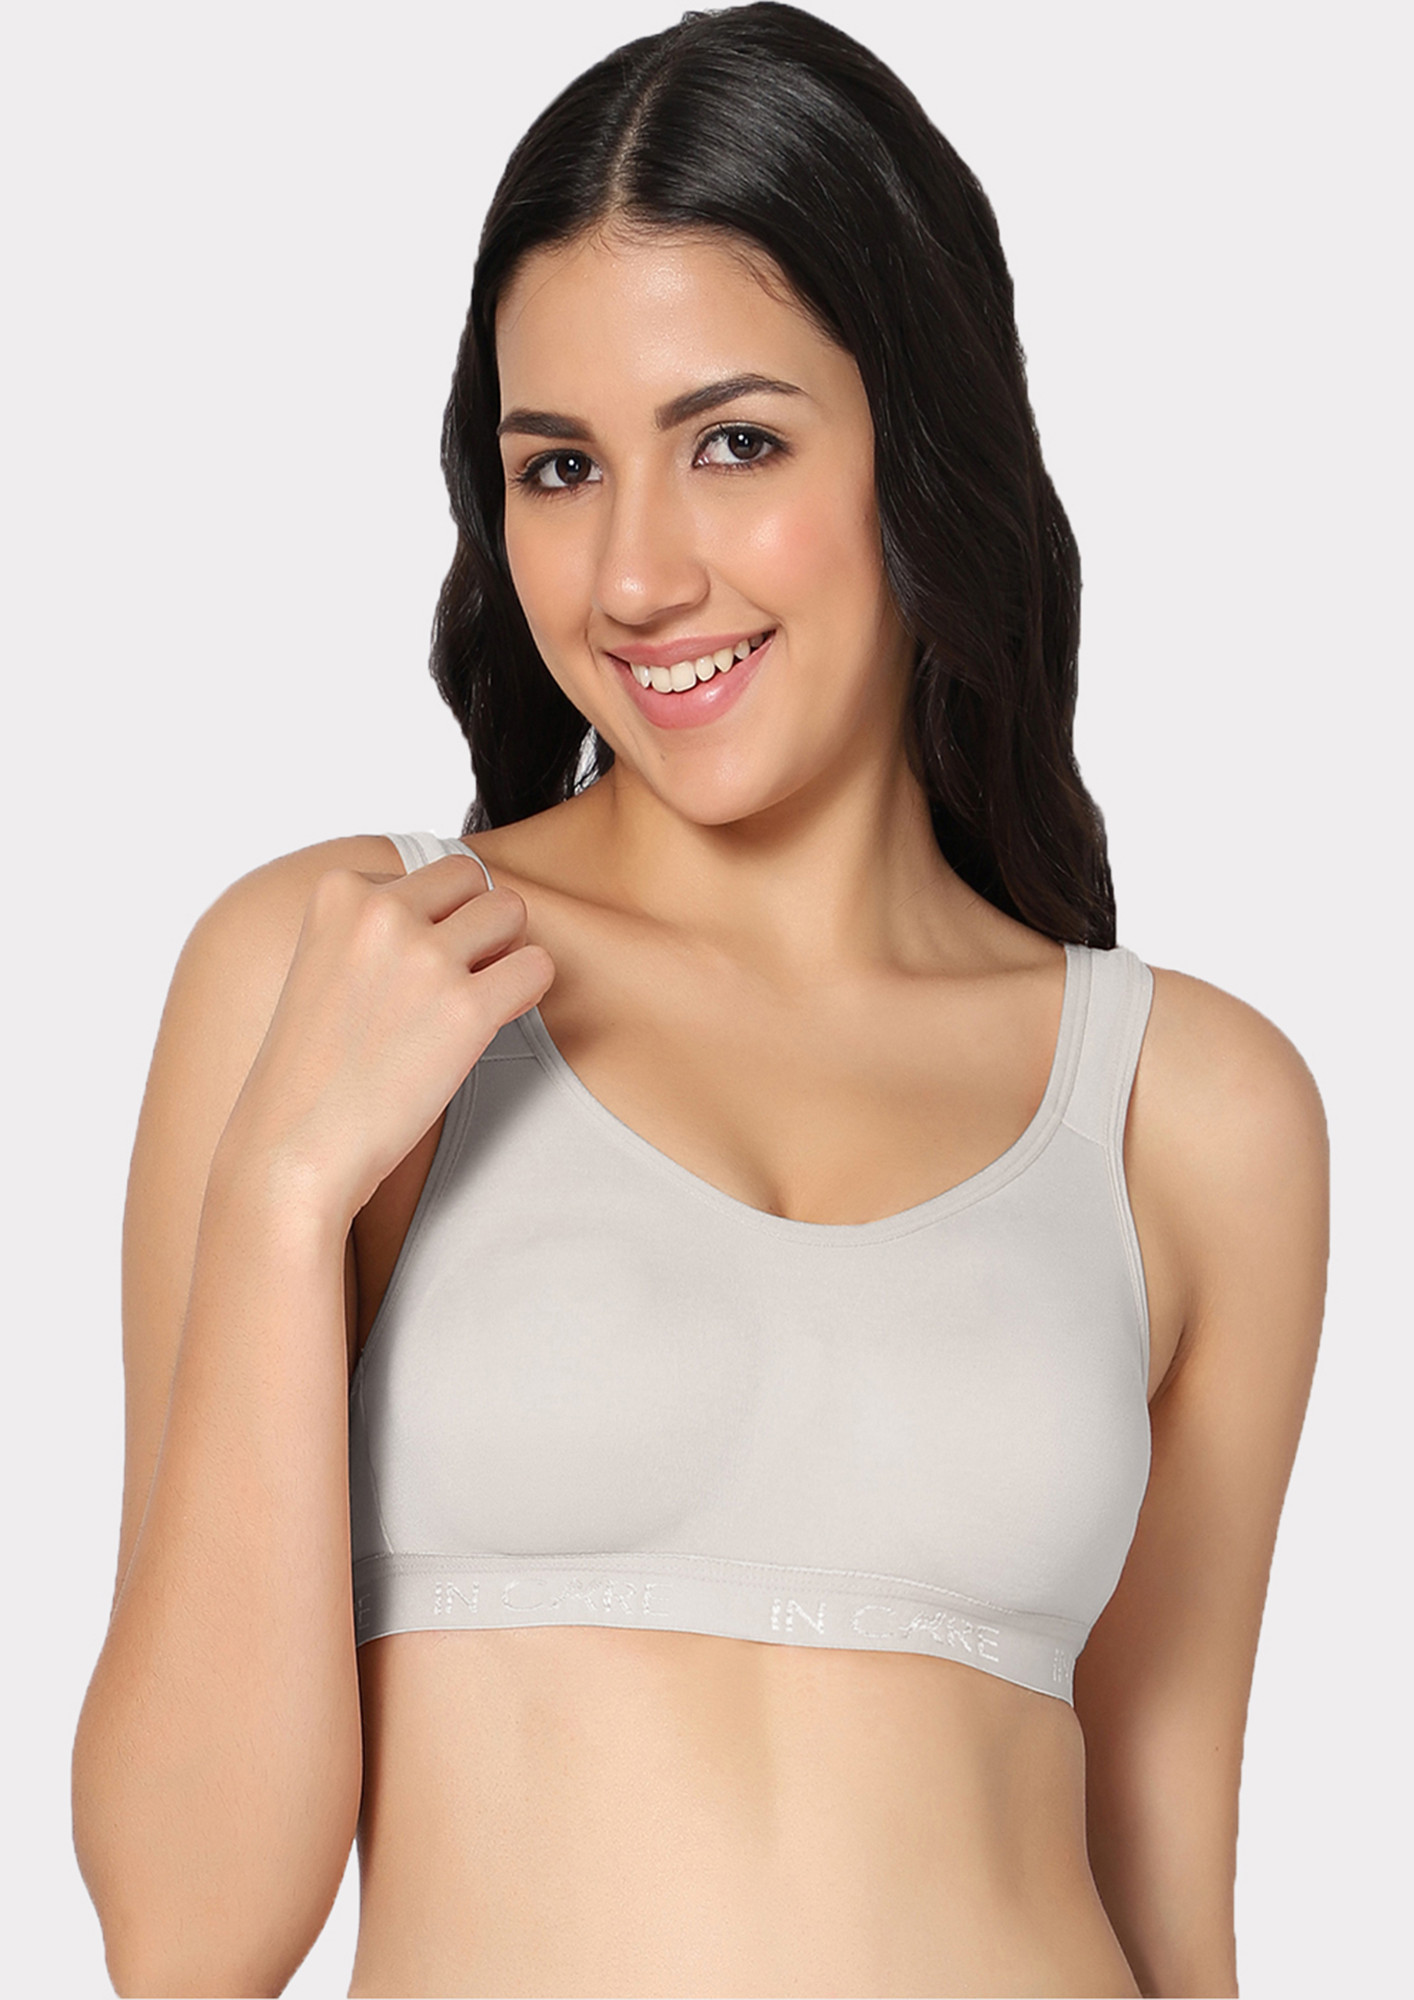 Buy Energy white sports bra for Women Online in India